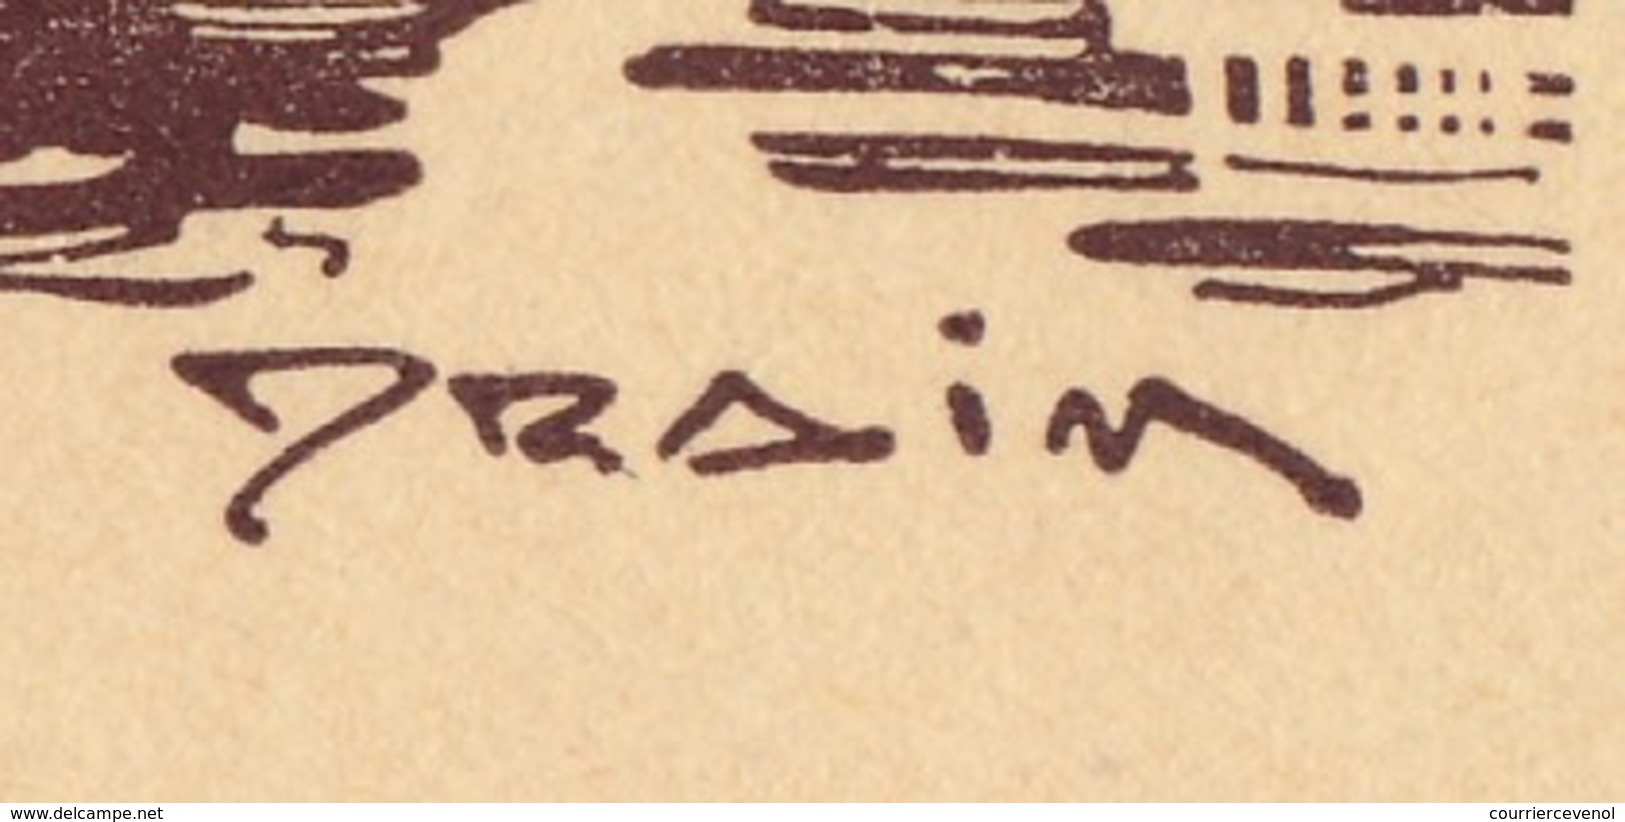 FRANCE - Carte-lettre Illustrée - Journée Du Timbre 1943 MARSEILLE - Dessin DRAIM - Affr 1,50 Bersier, Cachet Temporaire - Journée Du Timbre